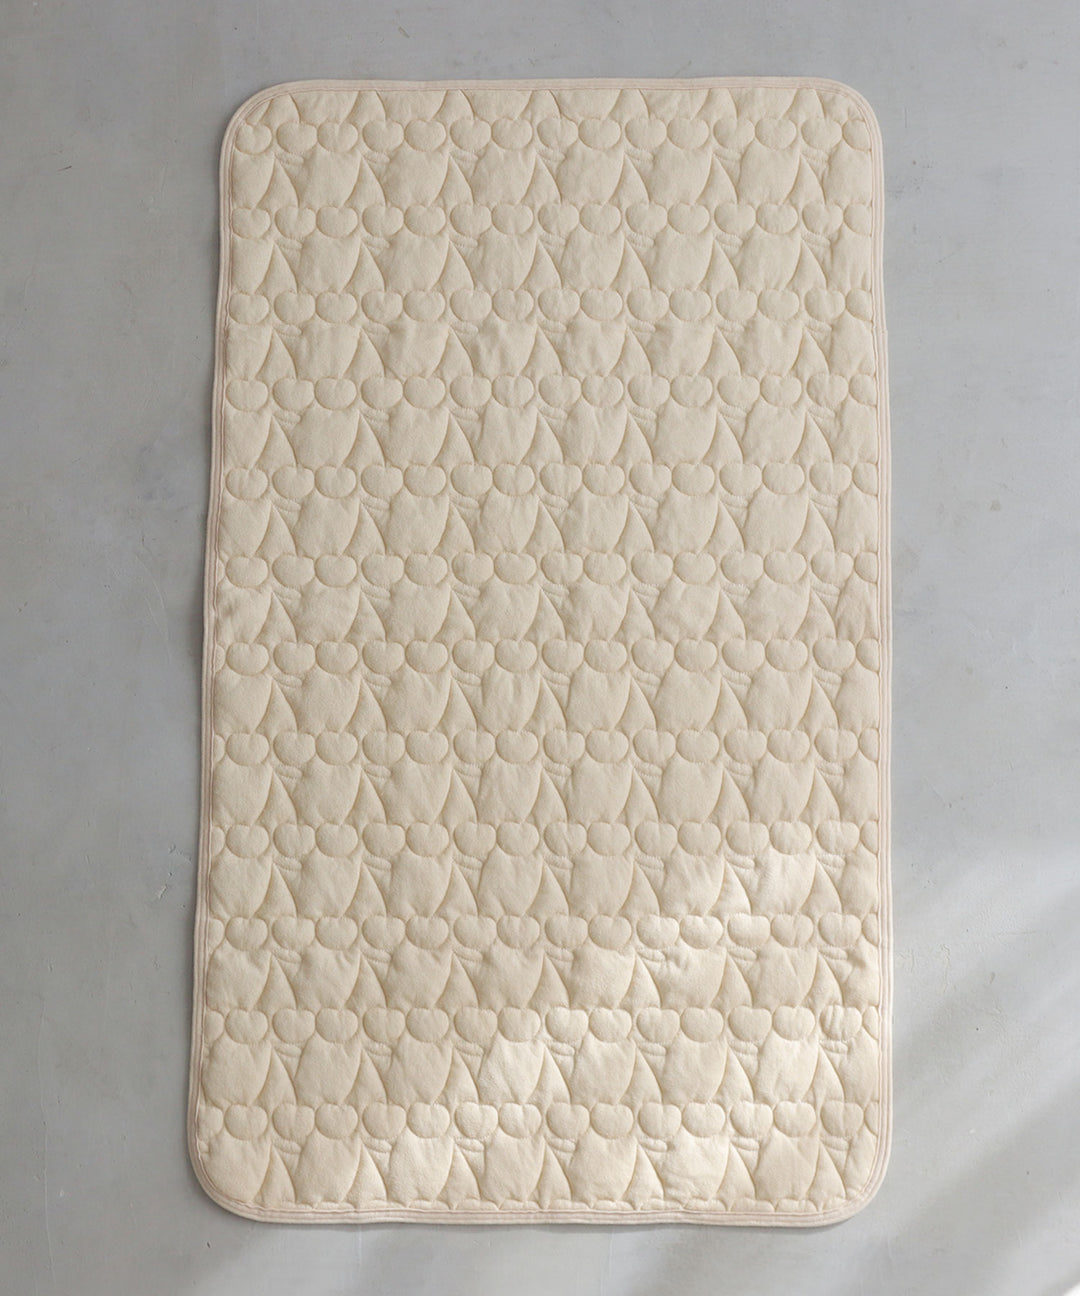 [Waterproof] Sweat-absorbing mattress pad [2-in-1] 27.6″ × 47.2″